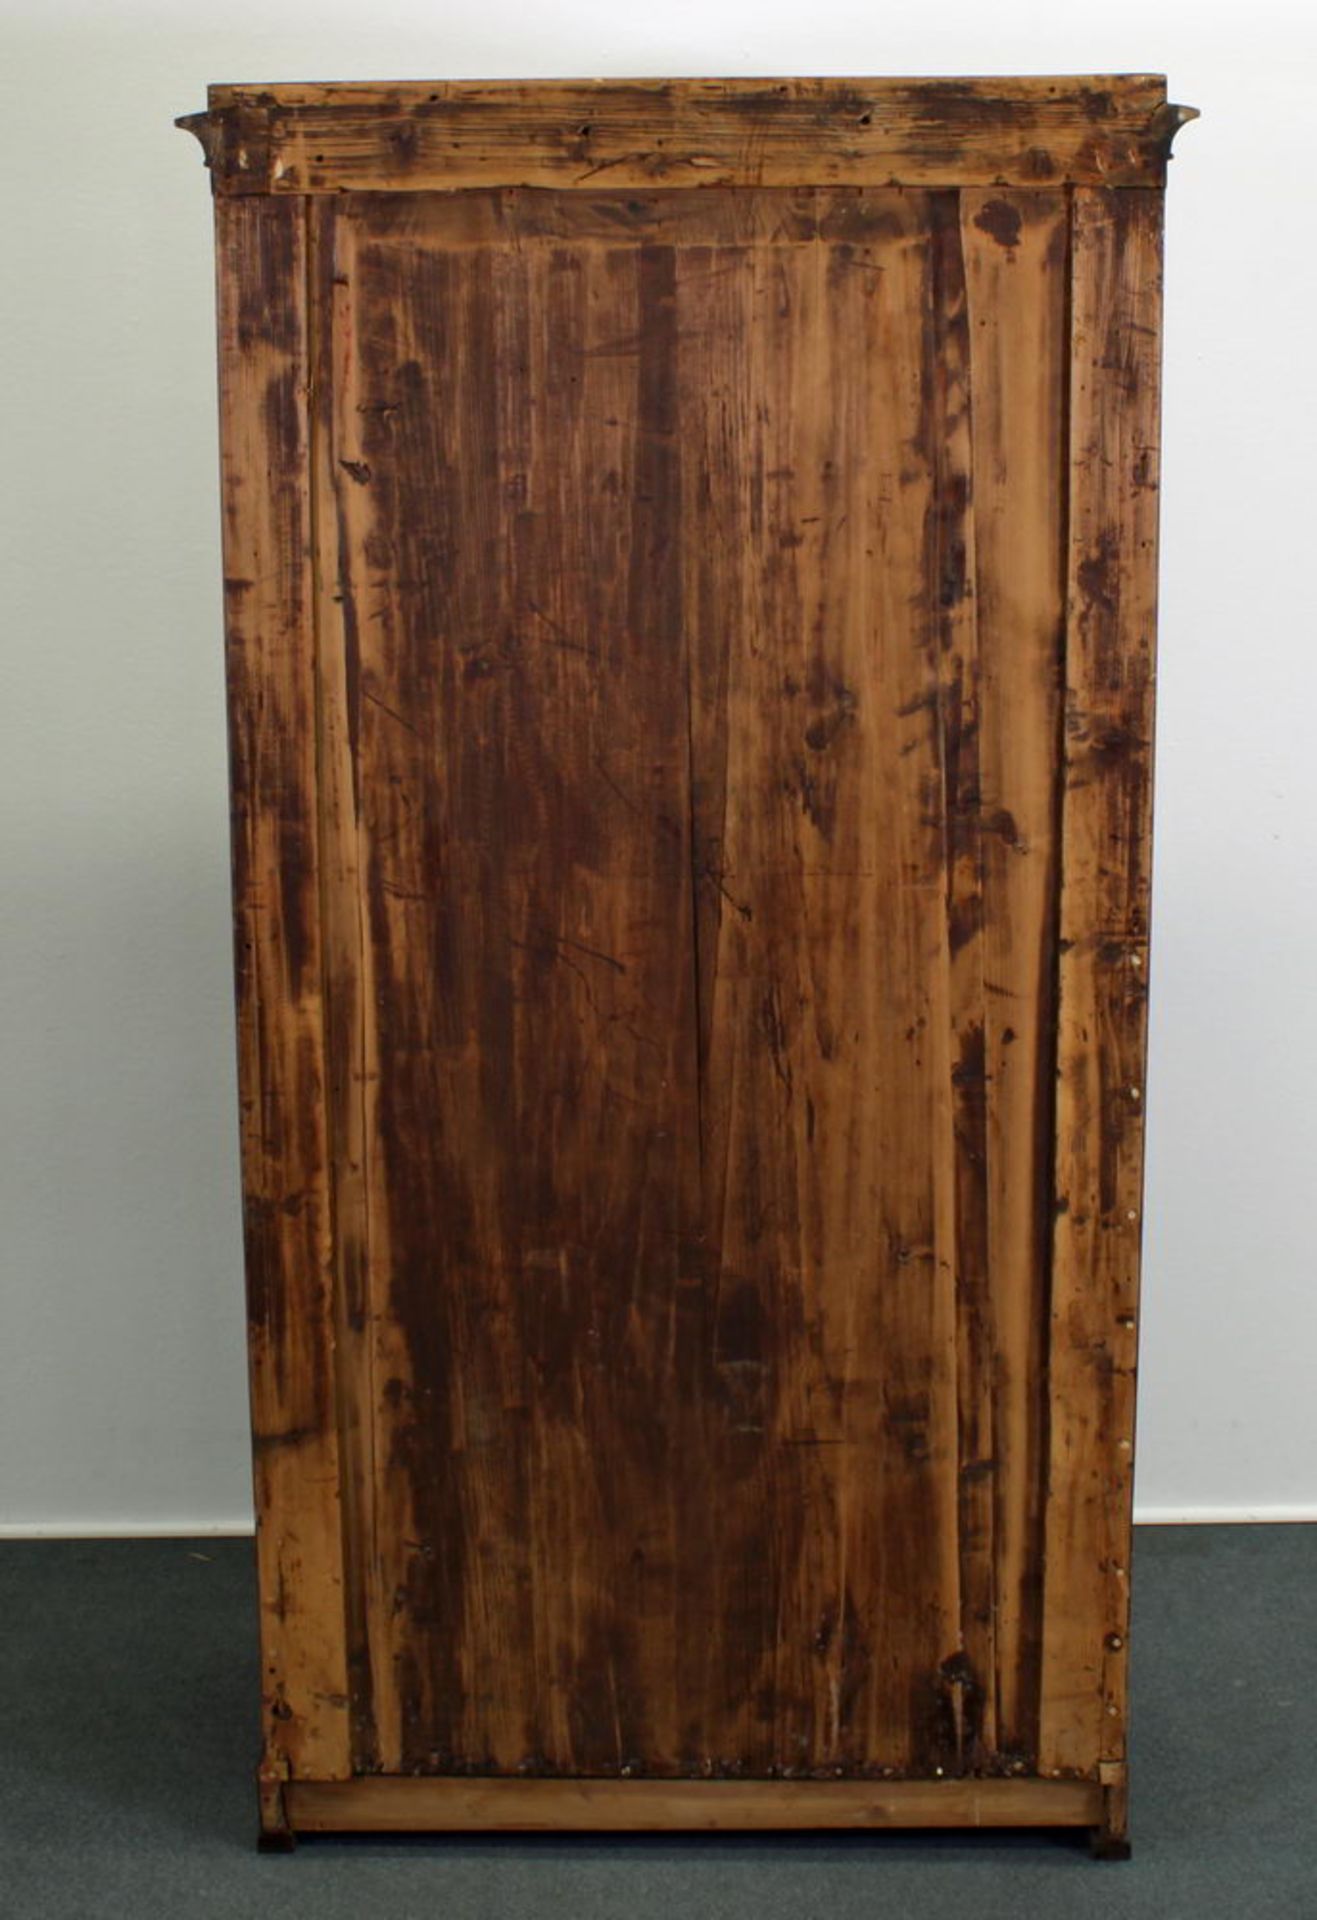 Schrank, Ende 19. Jh., Mahagoni, Tür mit Schildeinlagen, innen Kleiderstange, 156 x 82 x 48.5 cm, - Image 2 of 2